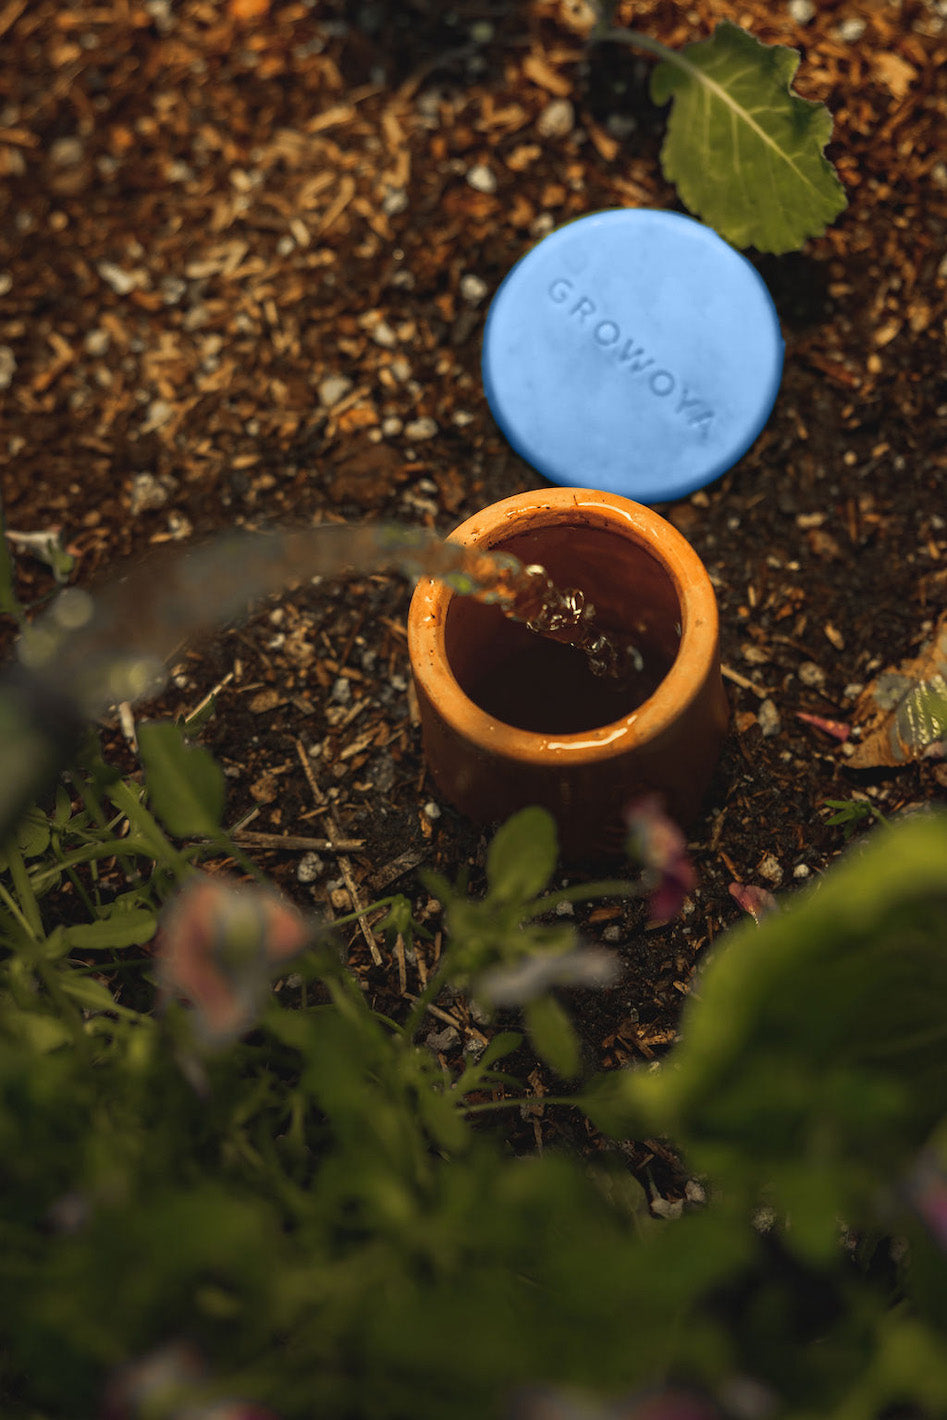 Refilling a buried Oya Watering pot in a garden